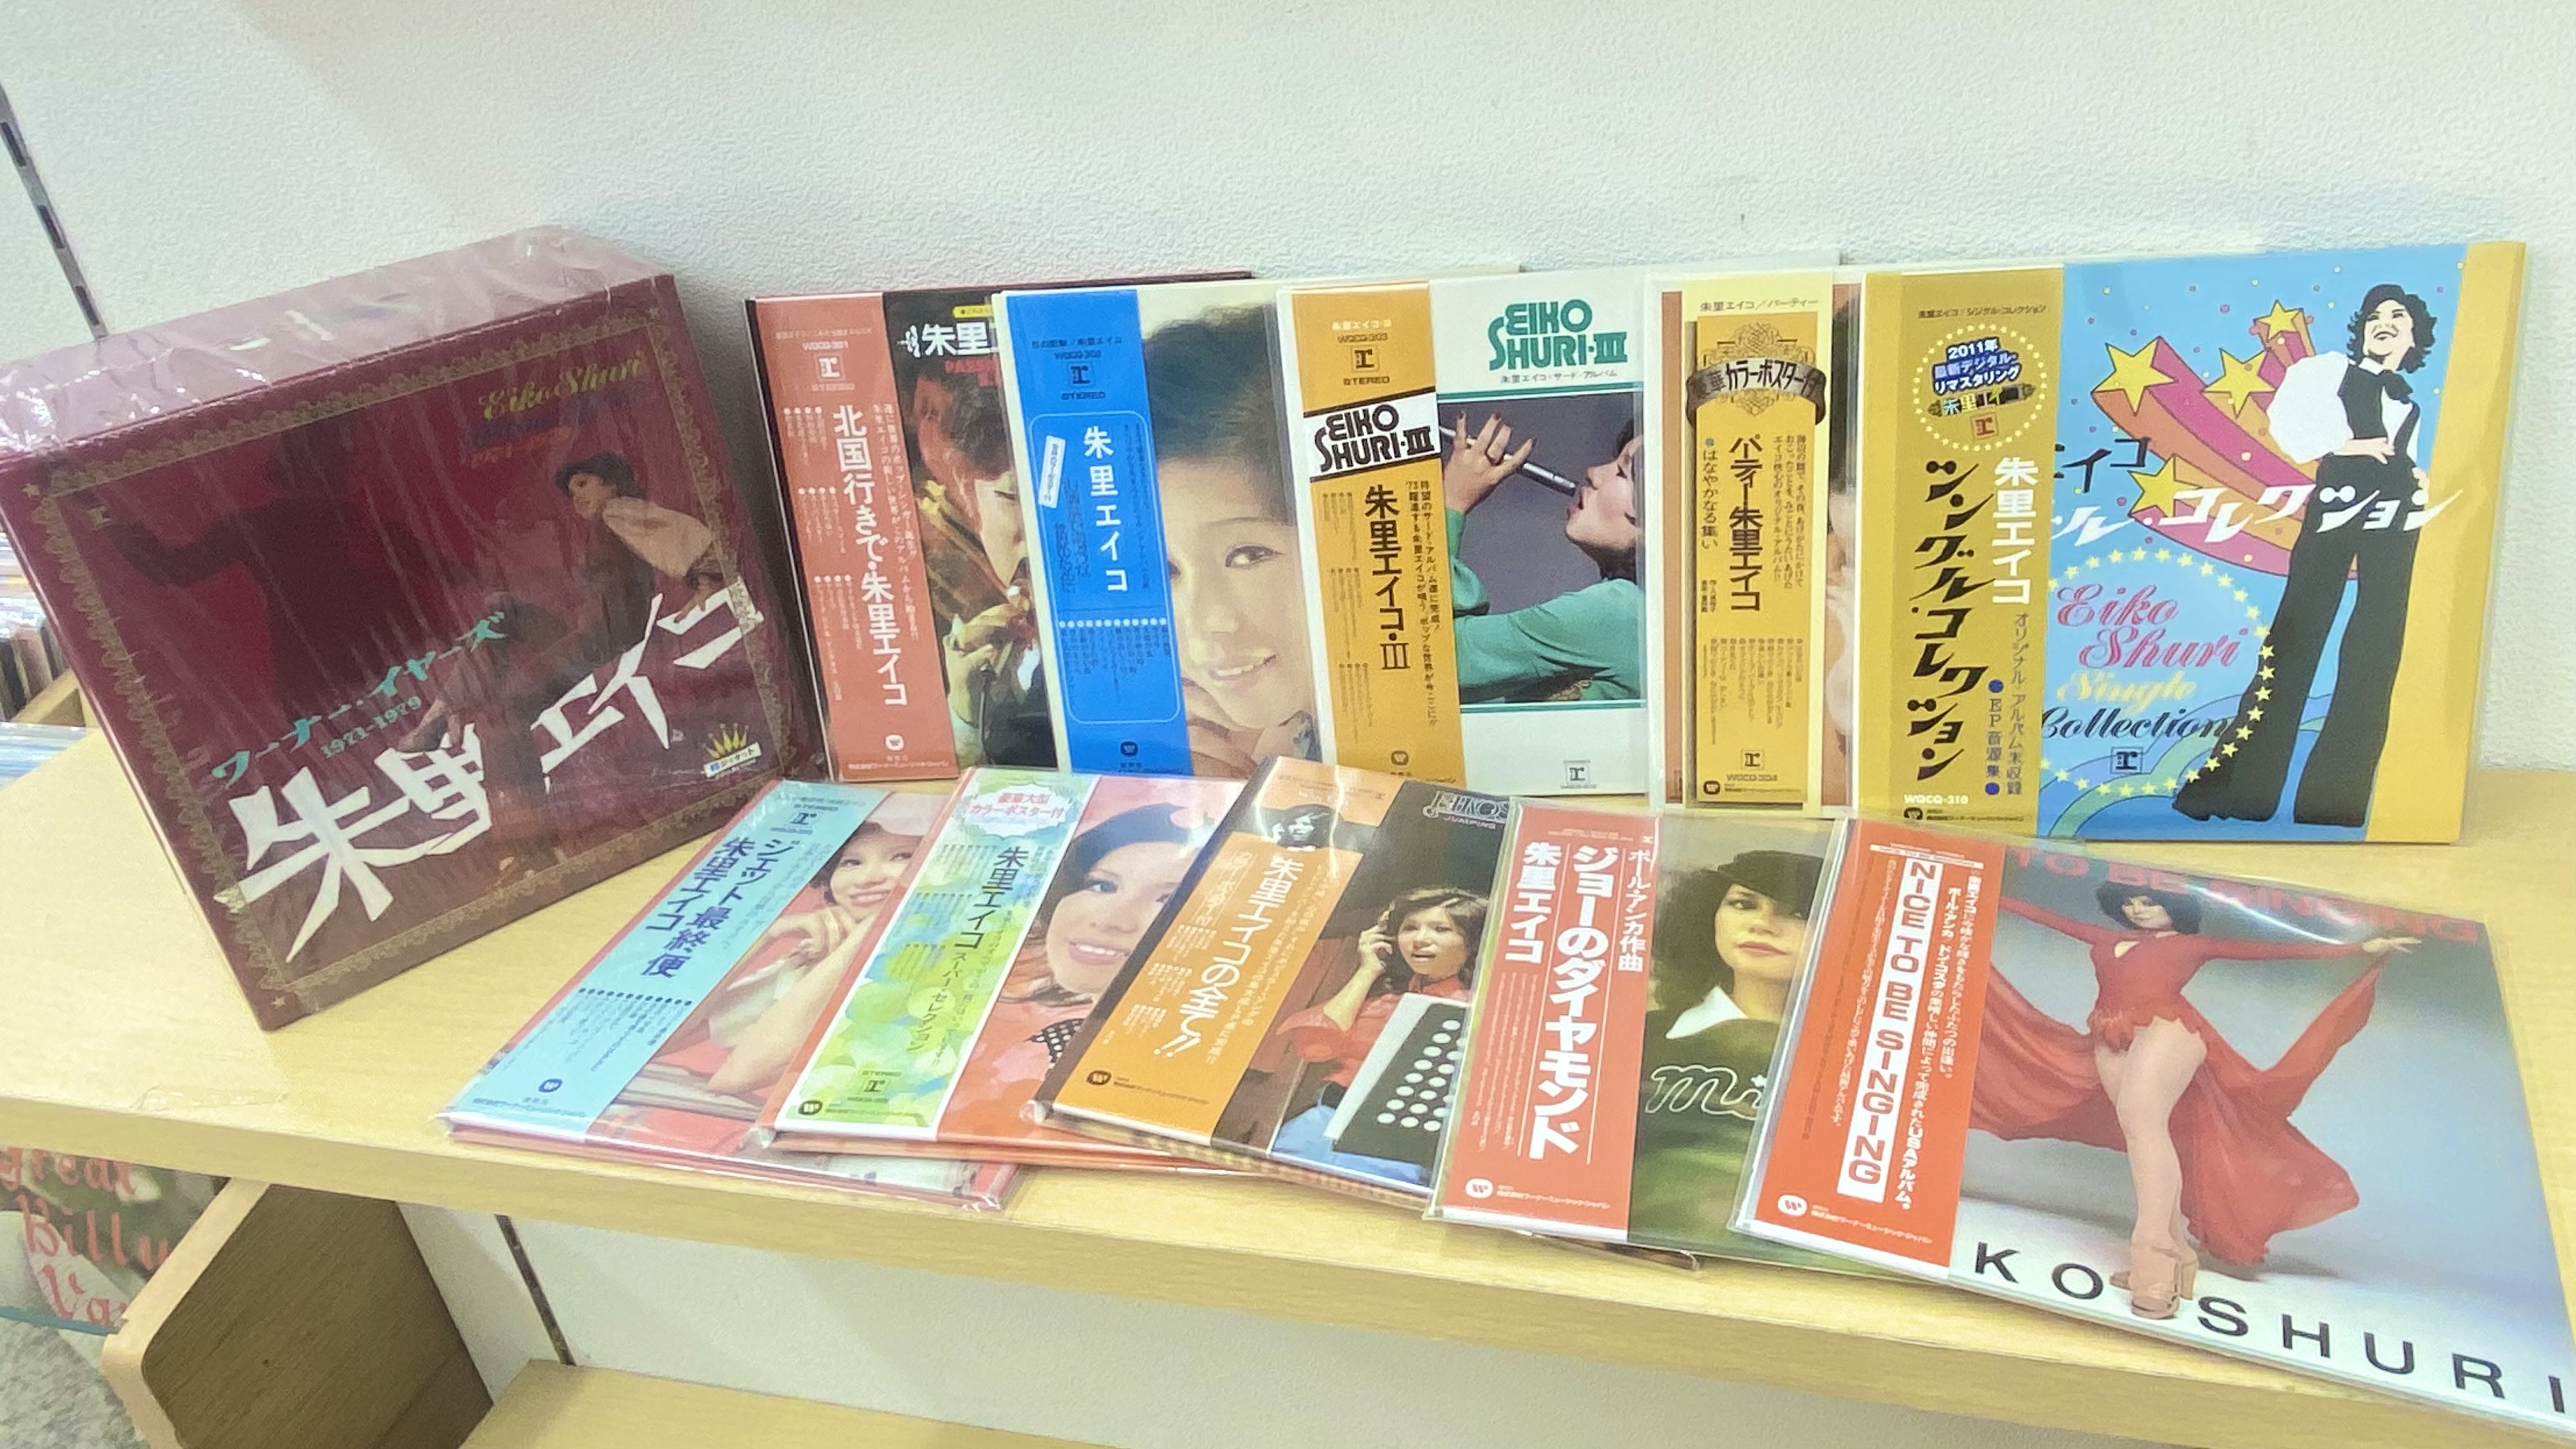 朱里エイ子◎ワーナー・イヤーズ1971-1979 中古CD BOX入荷 